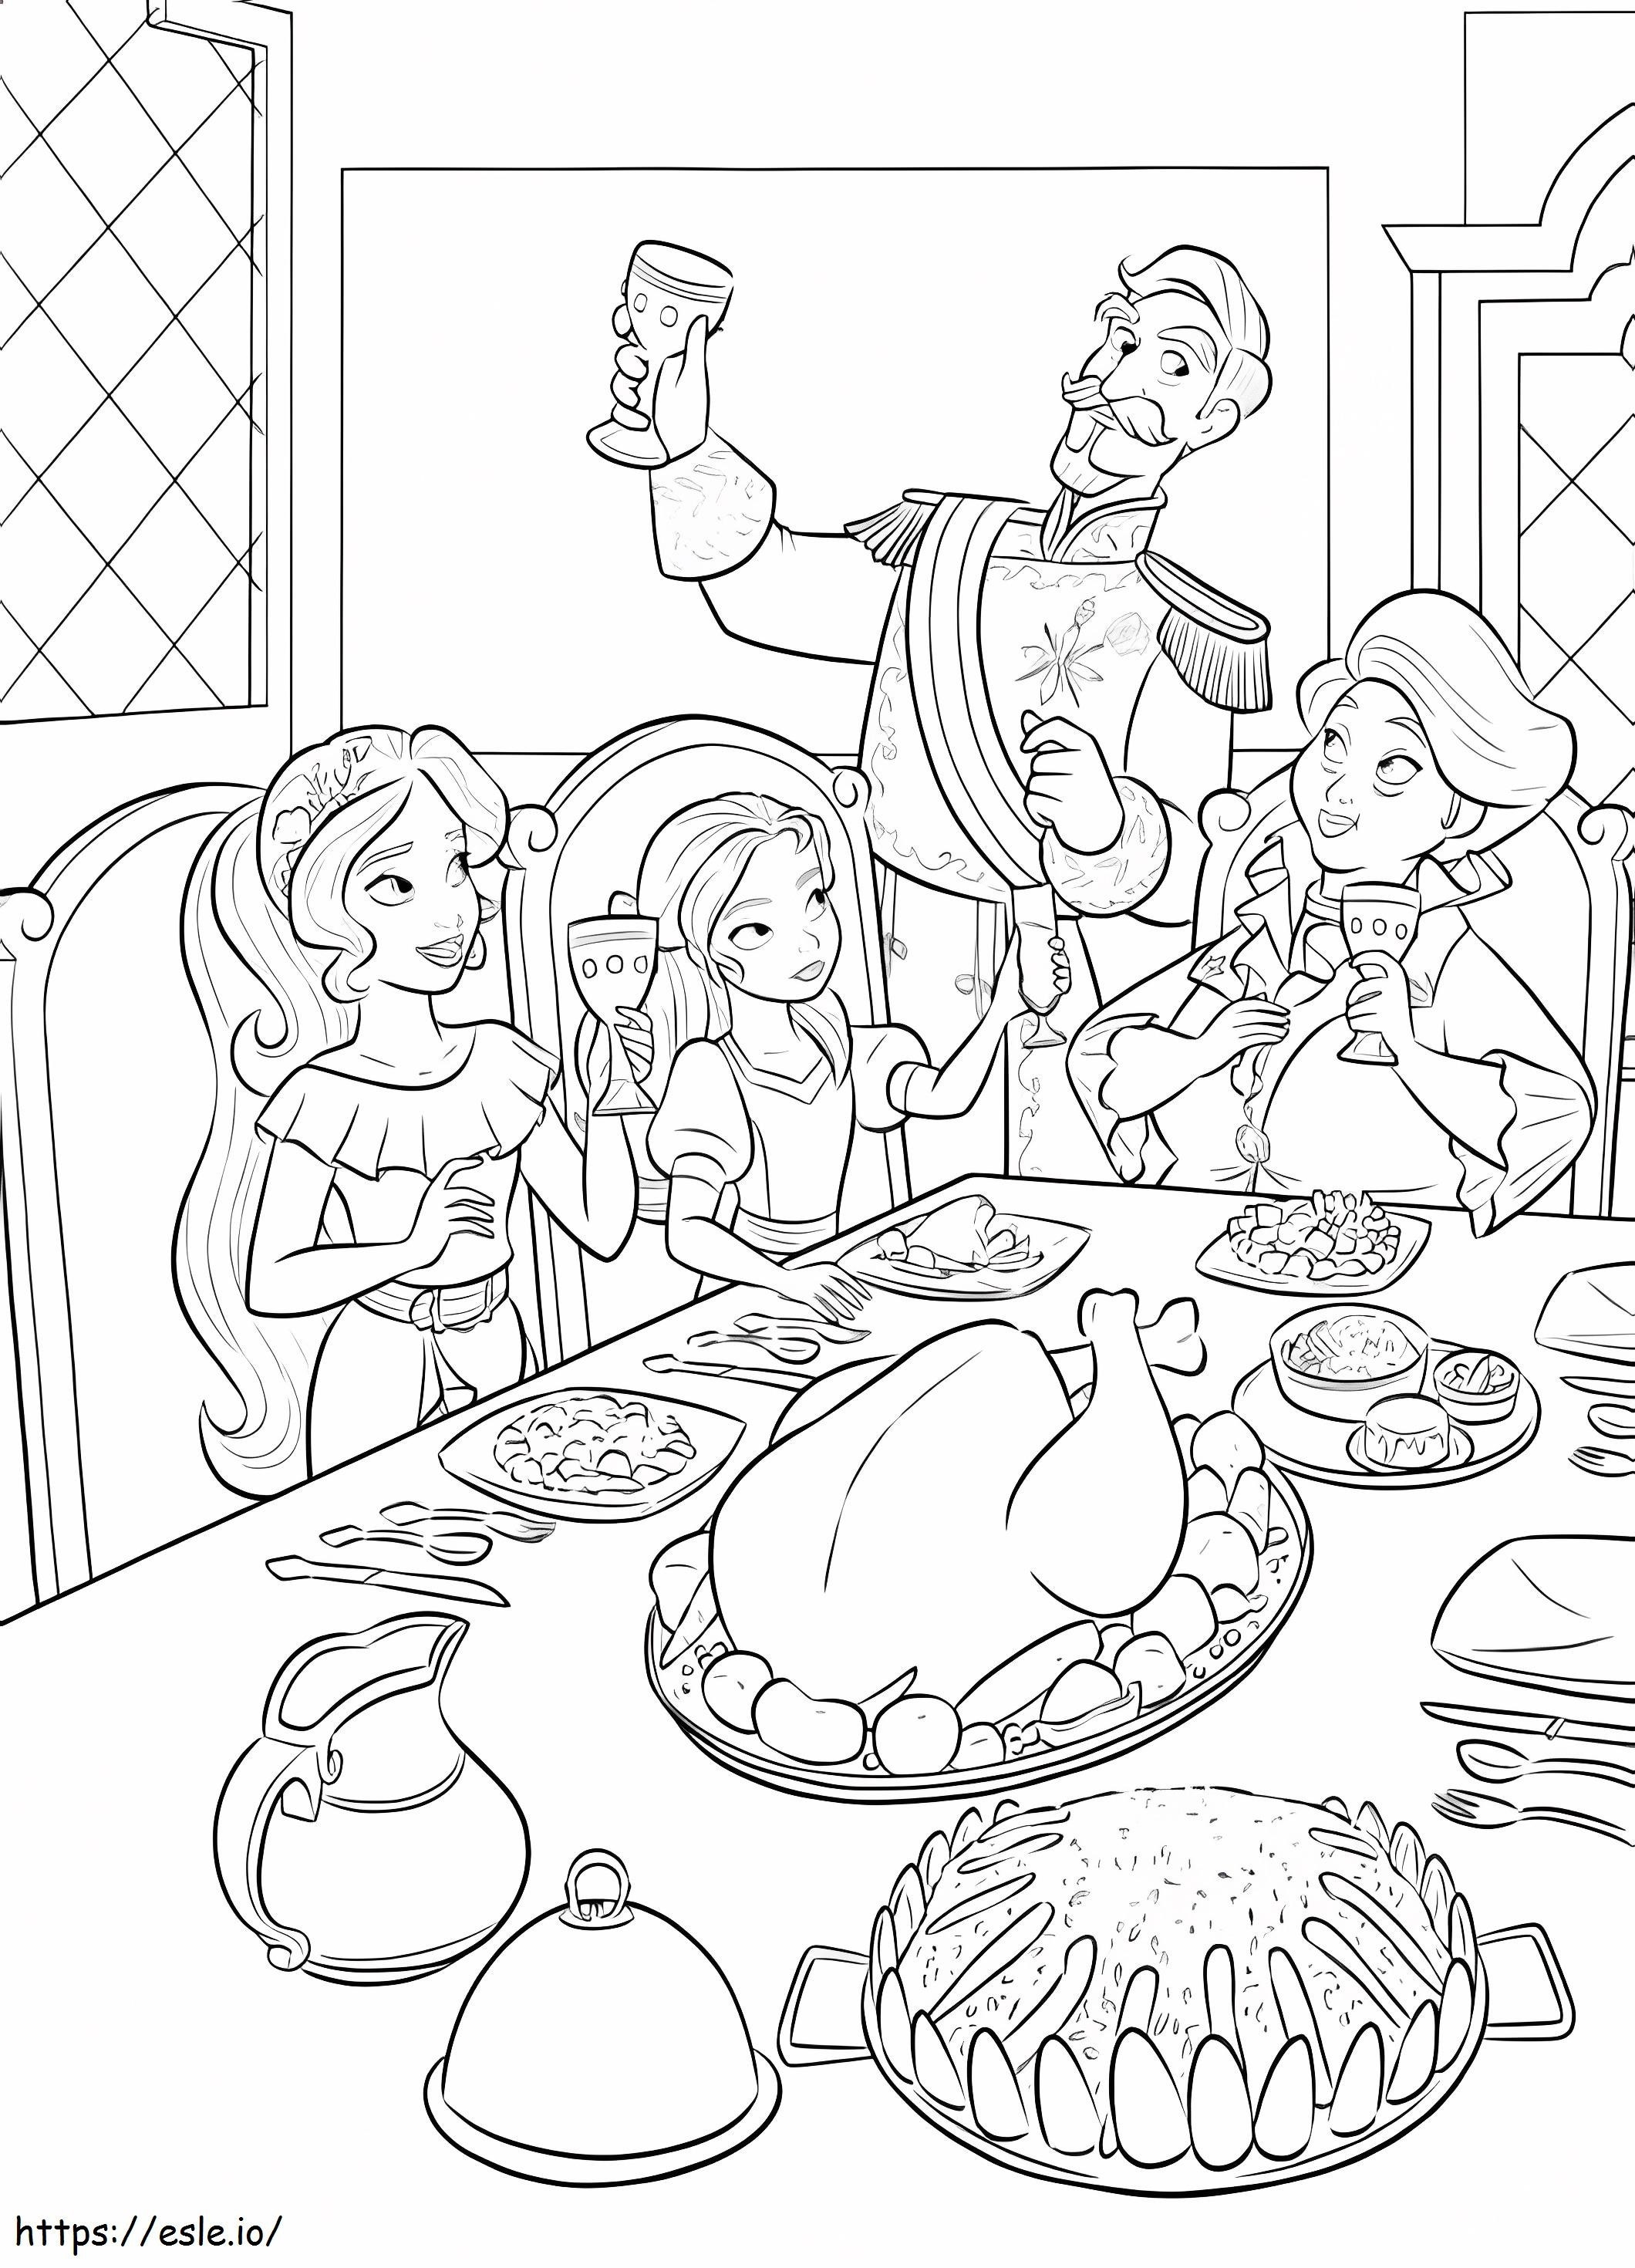 Prinzessin Elena und Familie beim Essen ausmalbilder